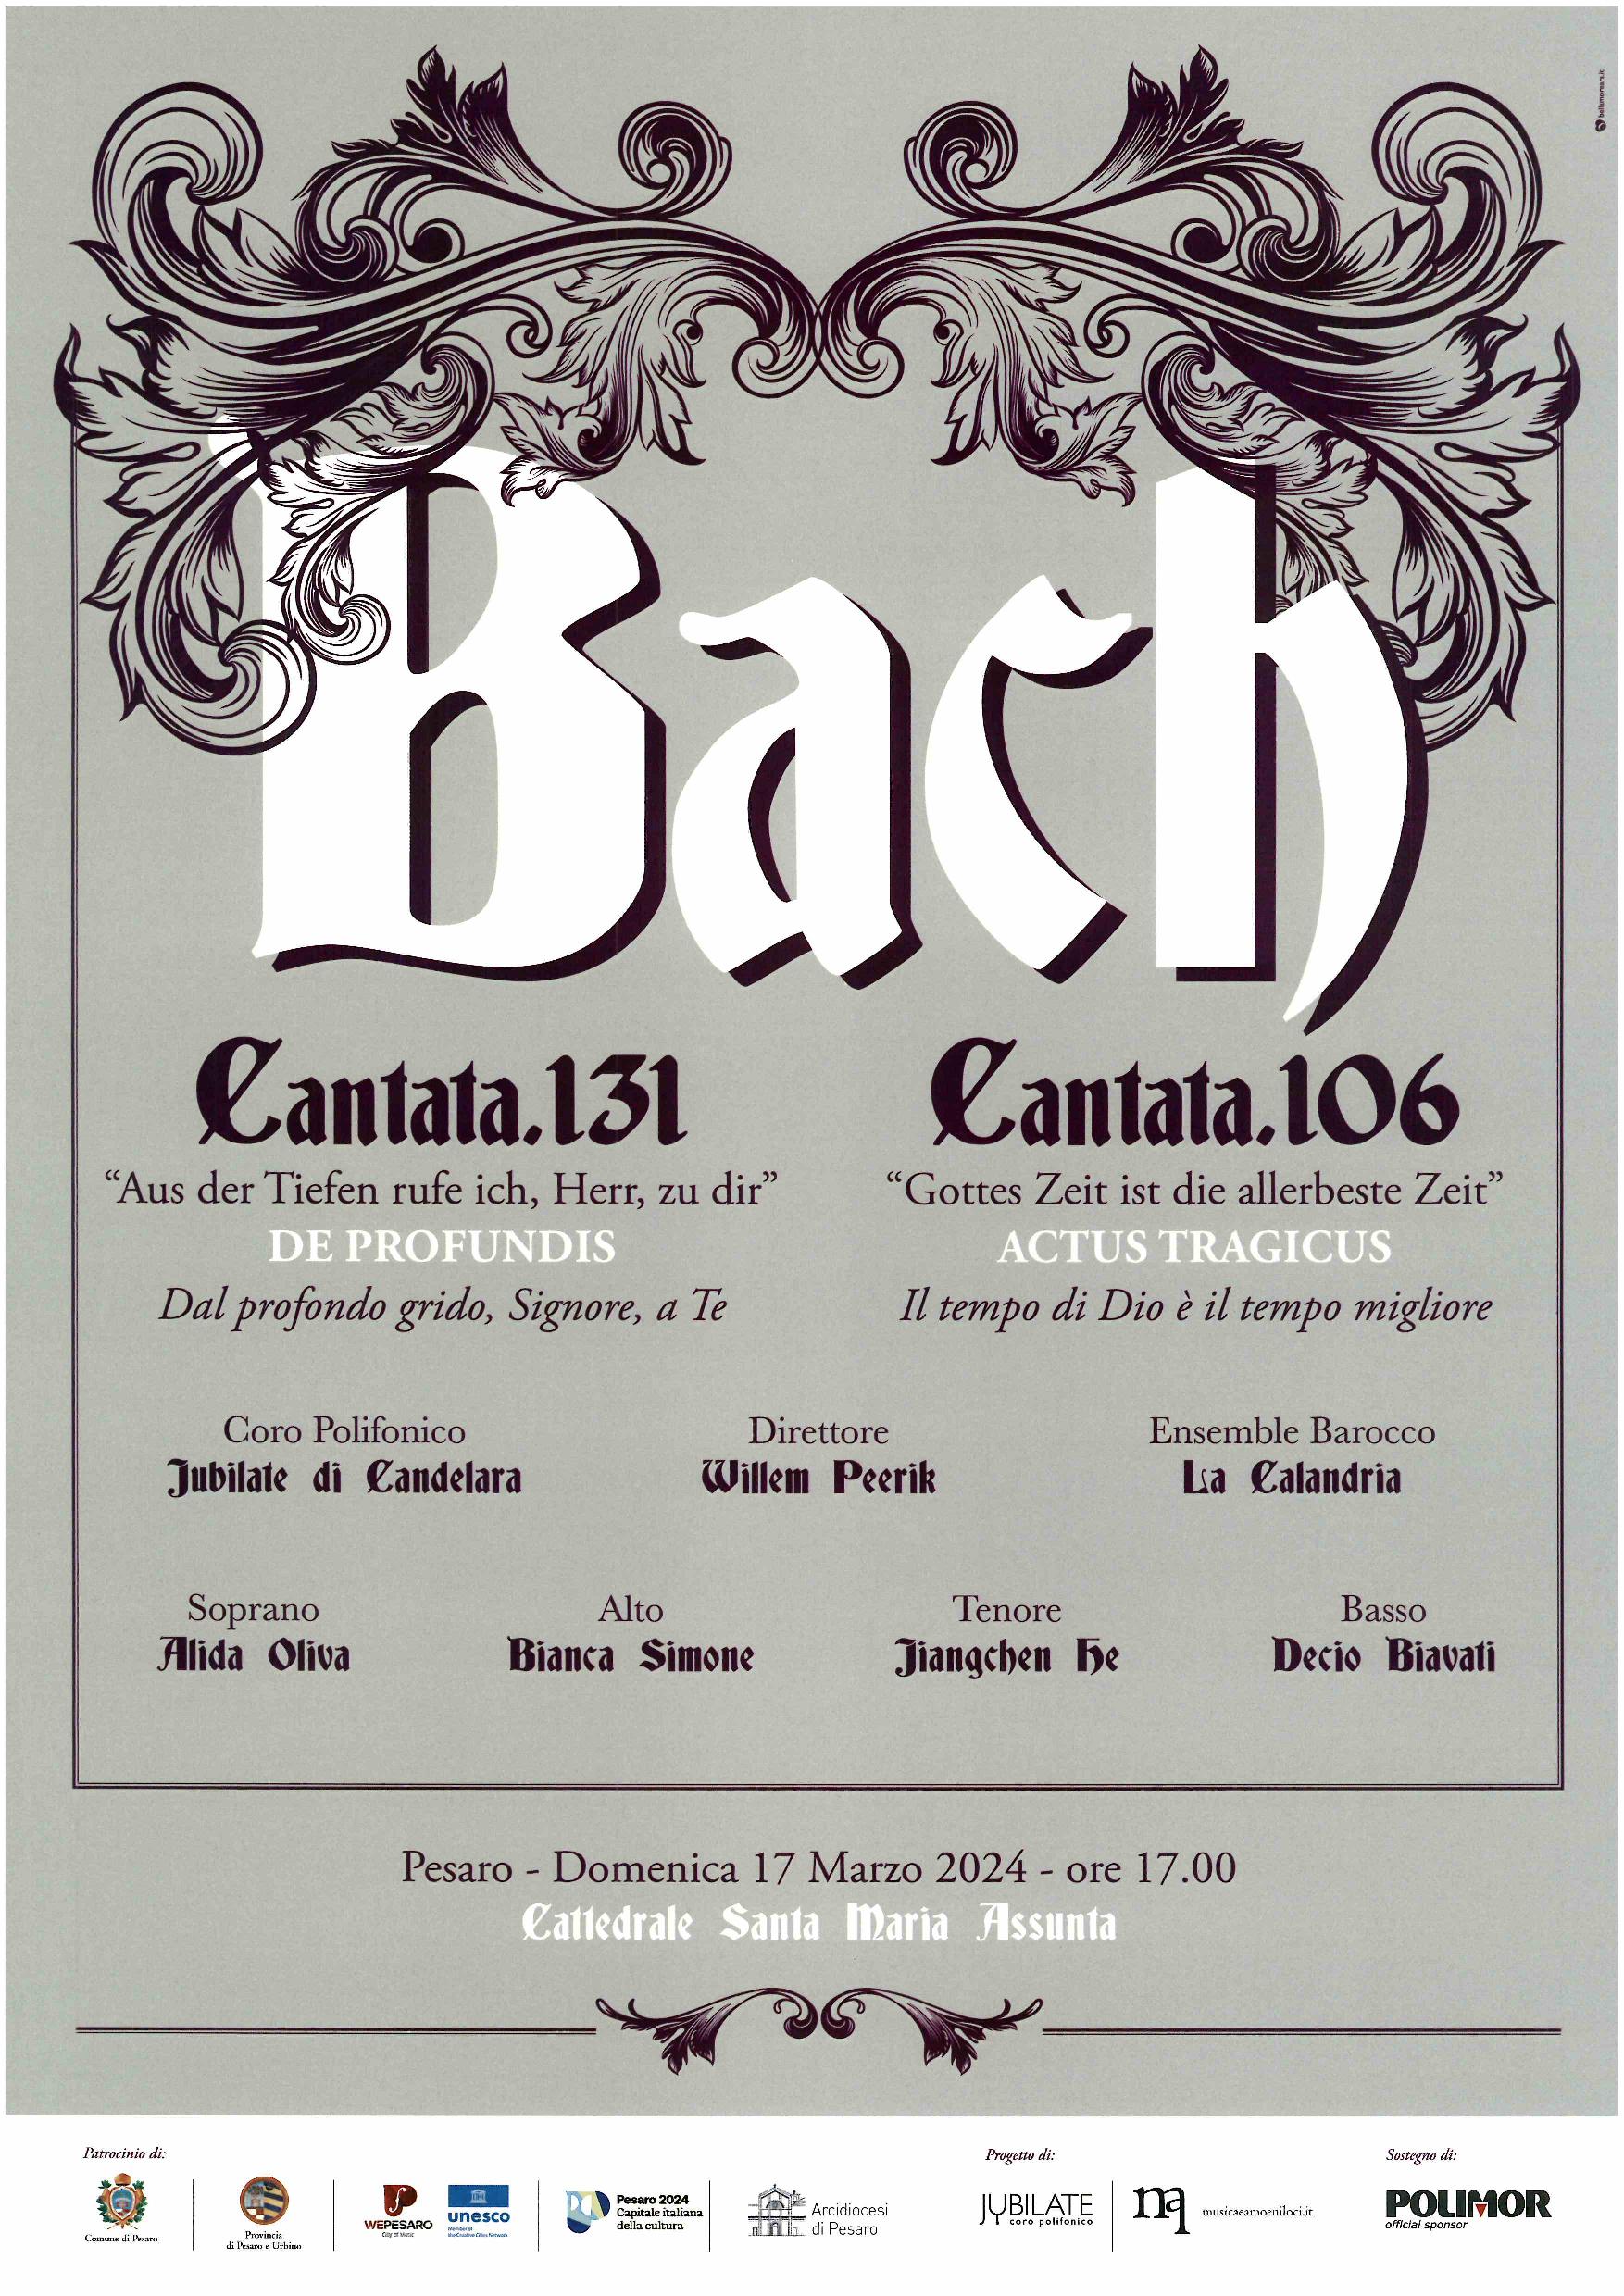 CORO POLIFONICO JUBILATE di CANDELARA – BACH – Cantata 131 – Cantata 106 – Cattedrale – 17 marzo 2024, ore 17.00